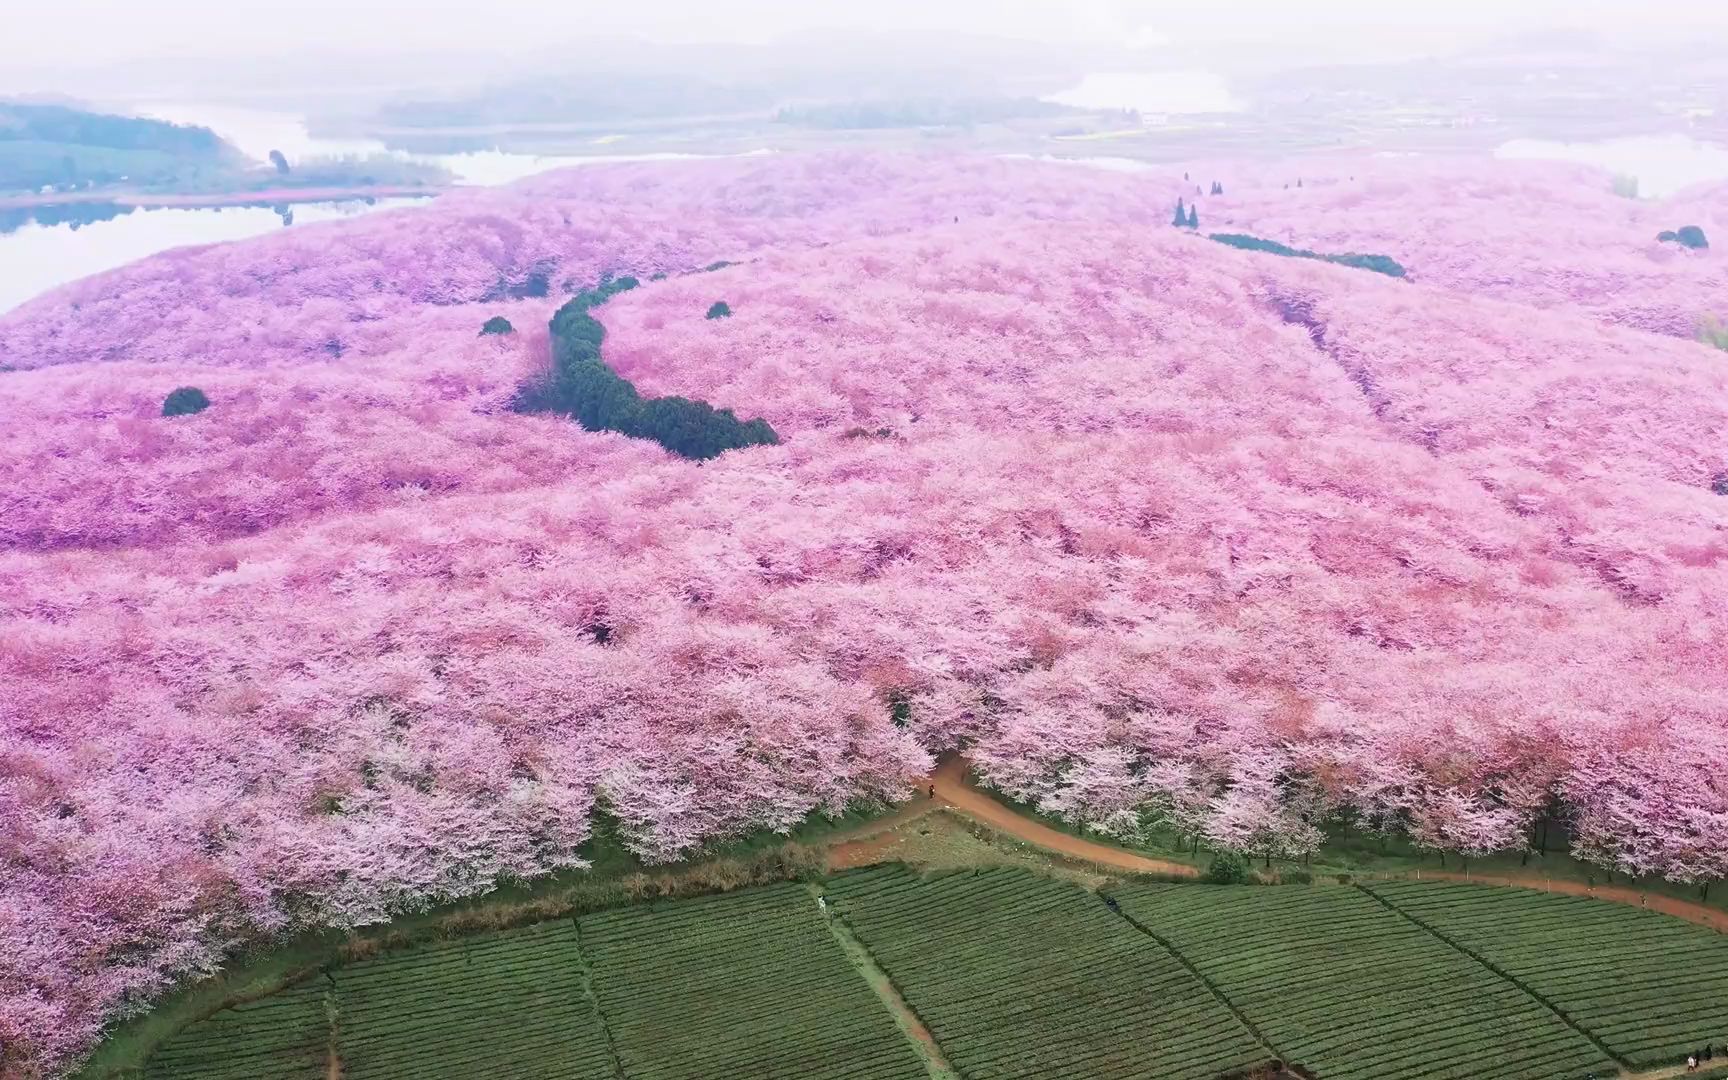 贵州樱花景区图片